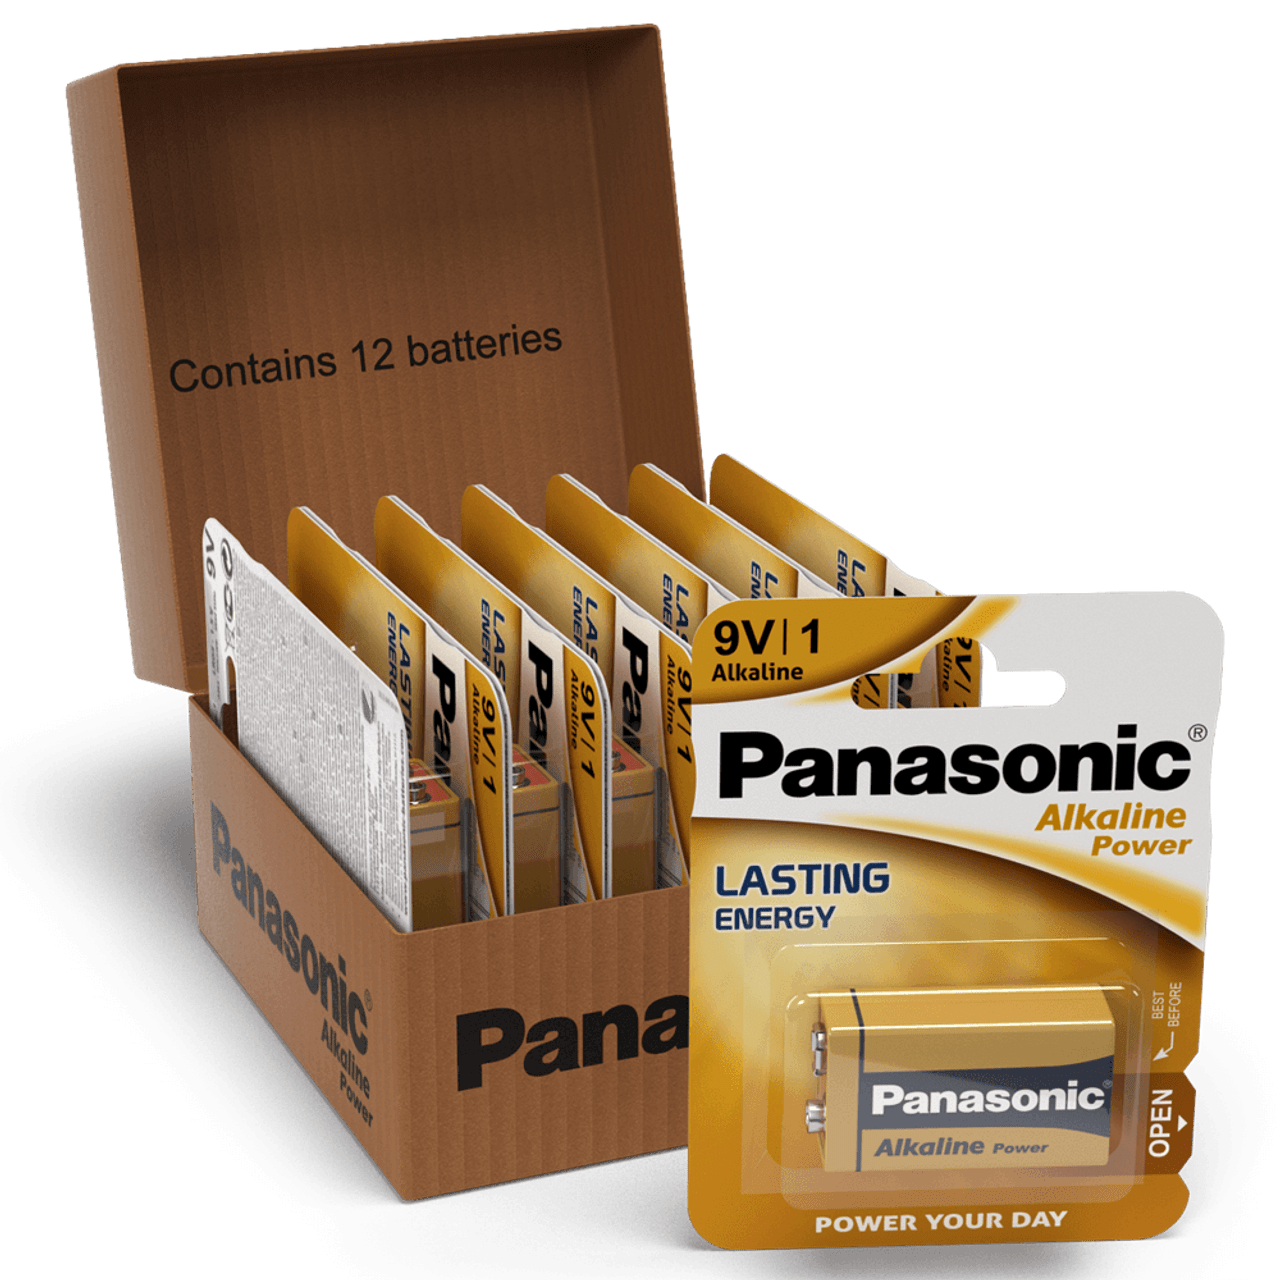 Panasonic Alkaline Power (Bronze) 9V PP3 Battery